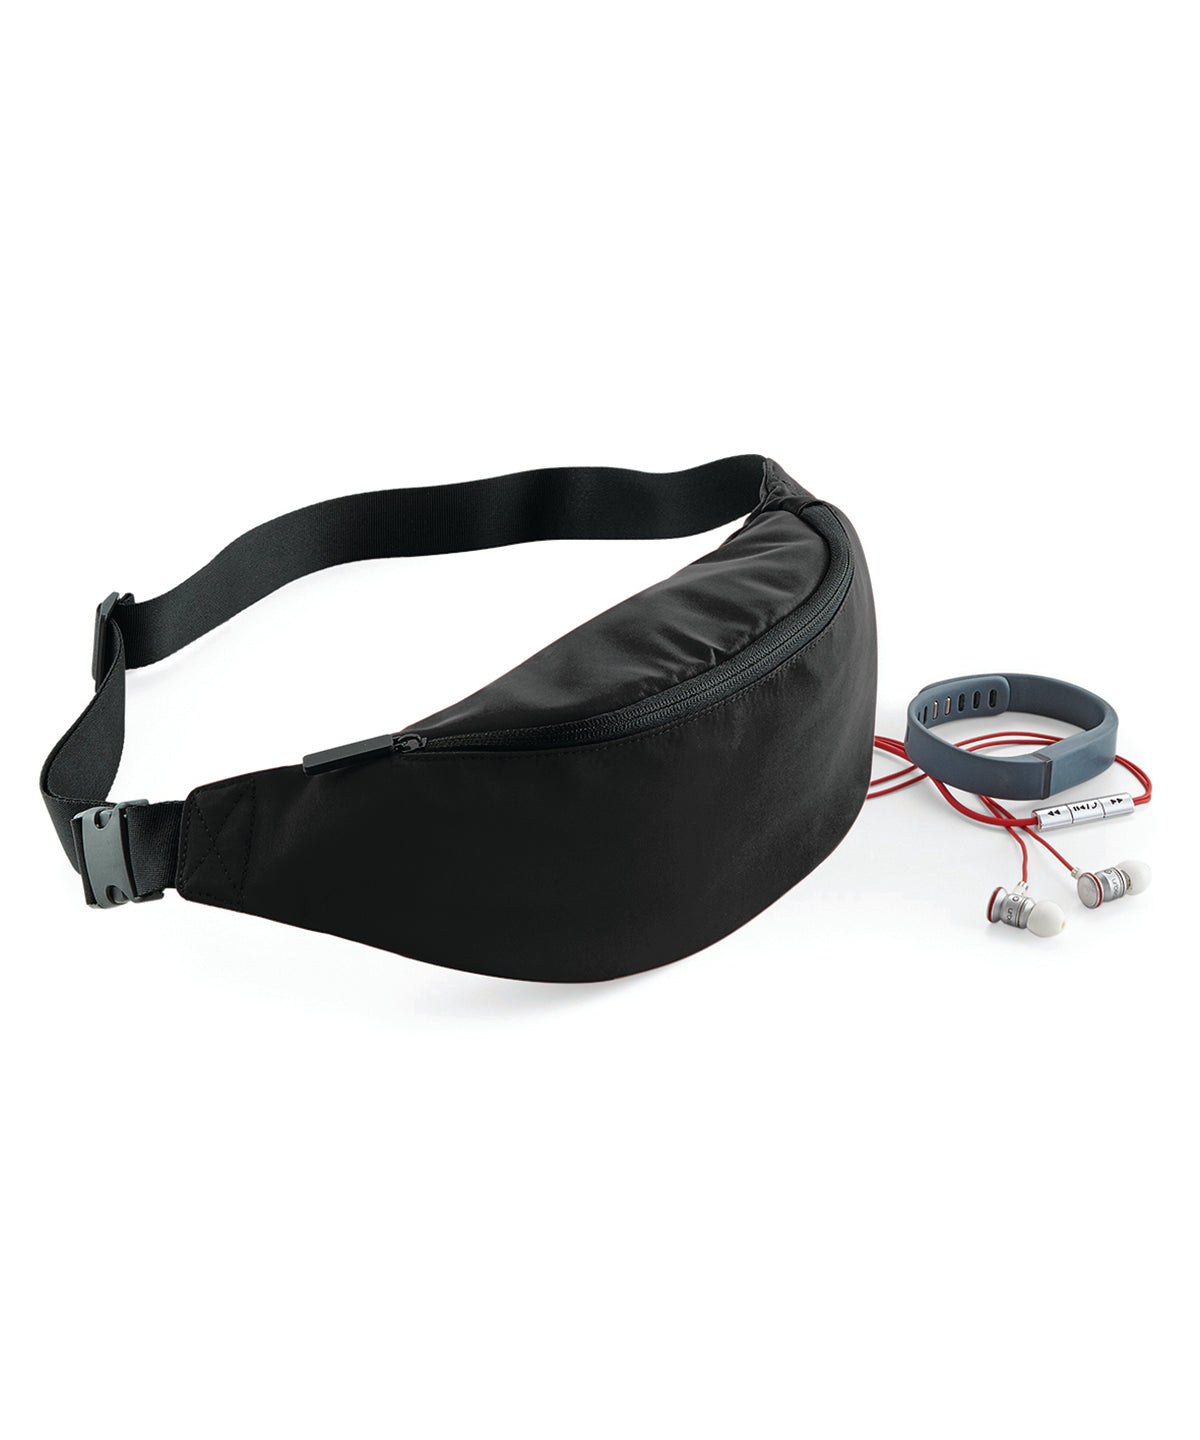 Personalised Bags - Black Bagbase Studio waistpack